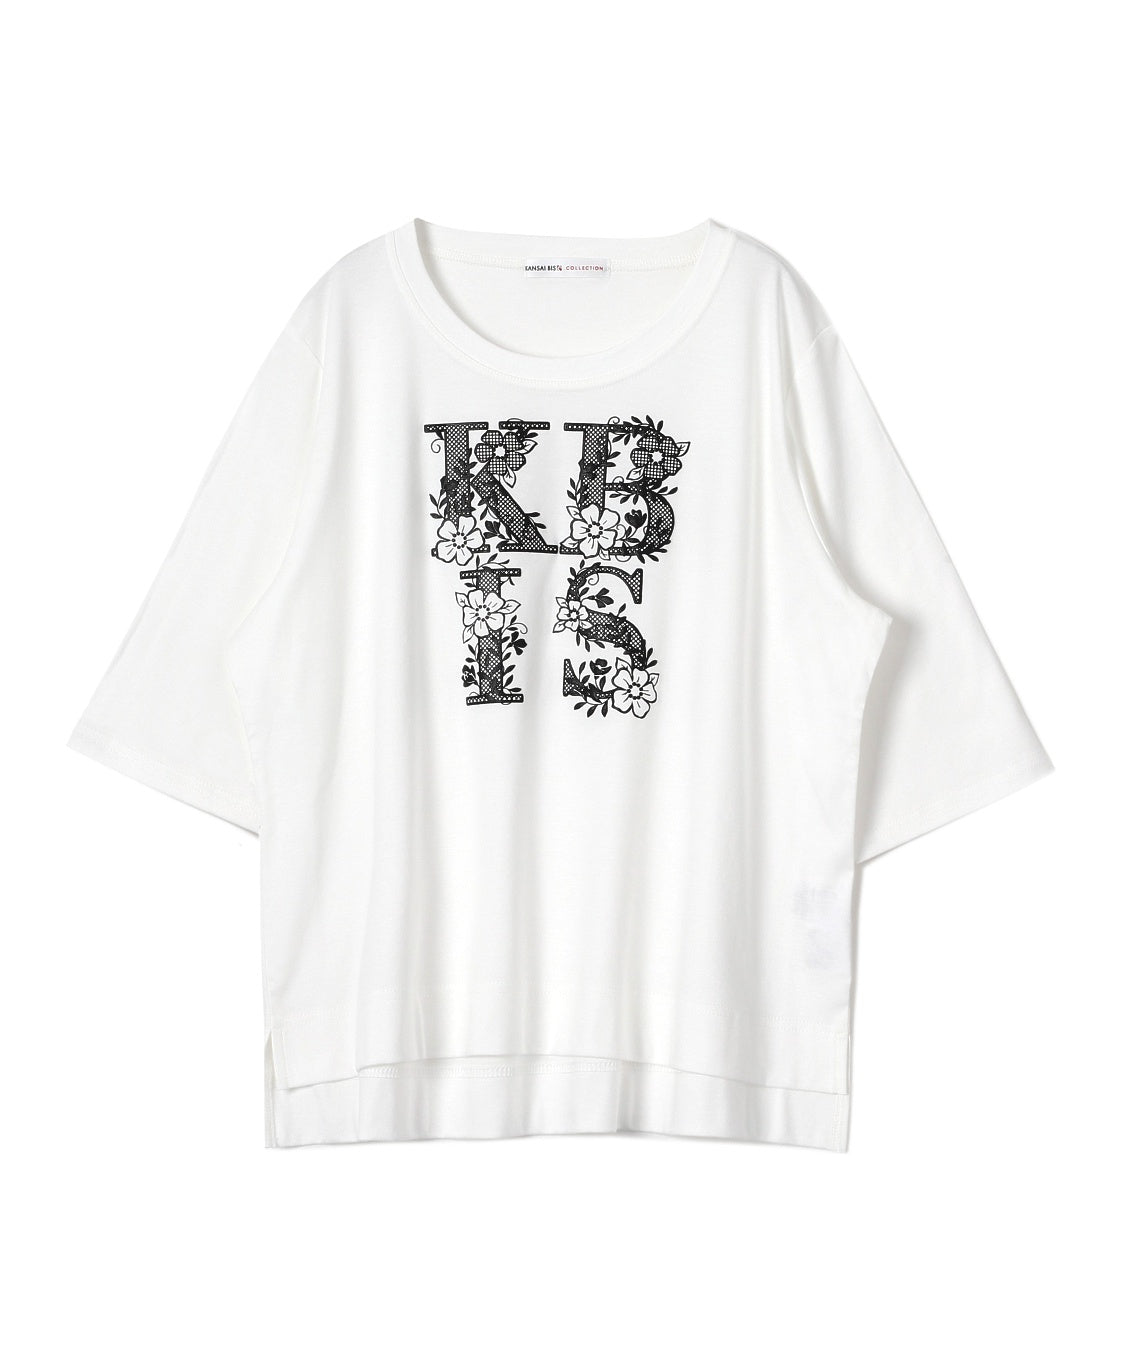 グラフィックレースTシャツ KANSAI BIS(カンサイビス)